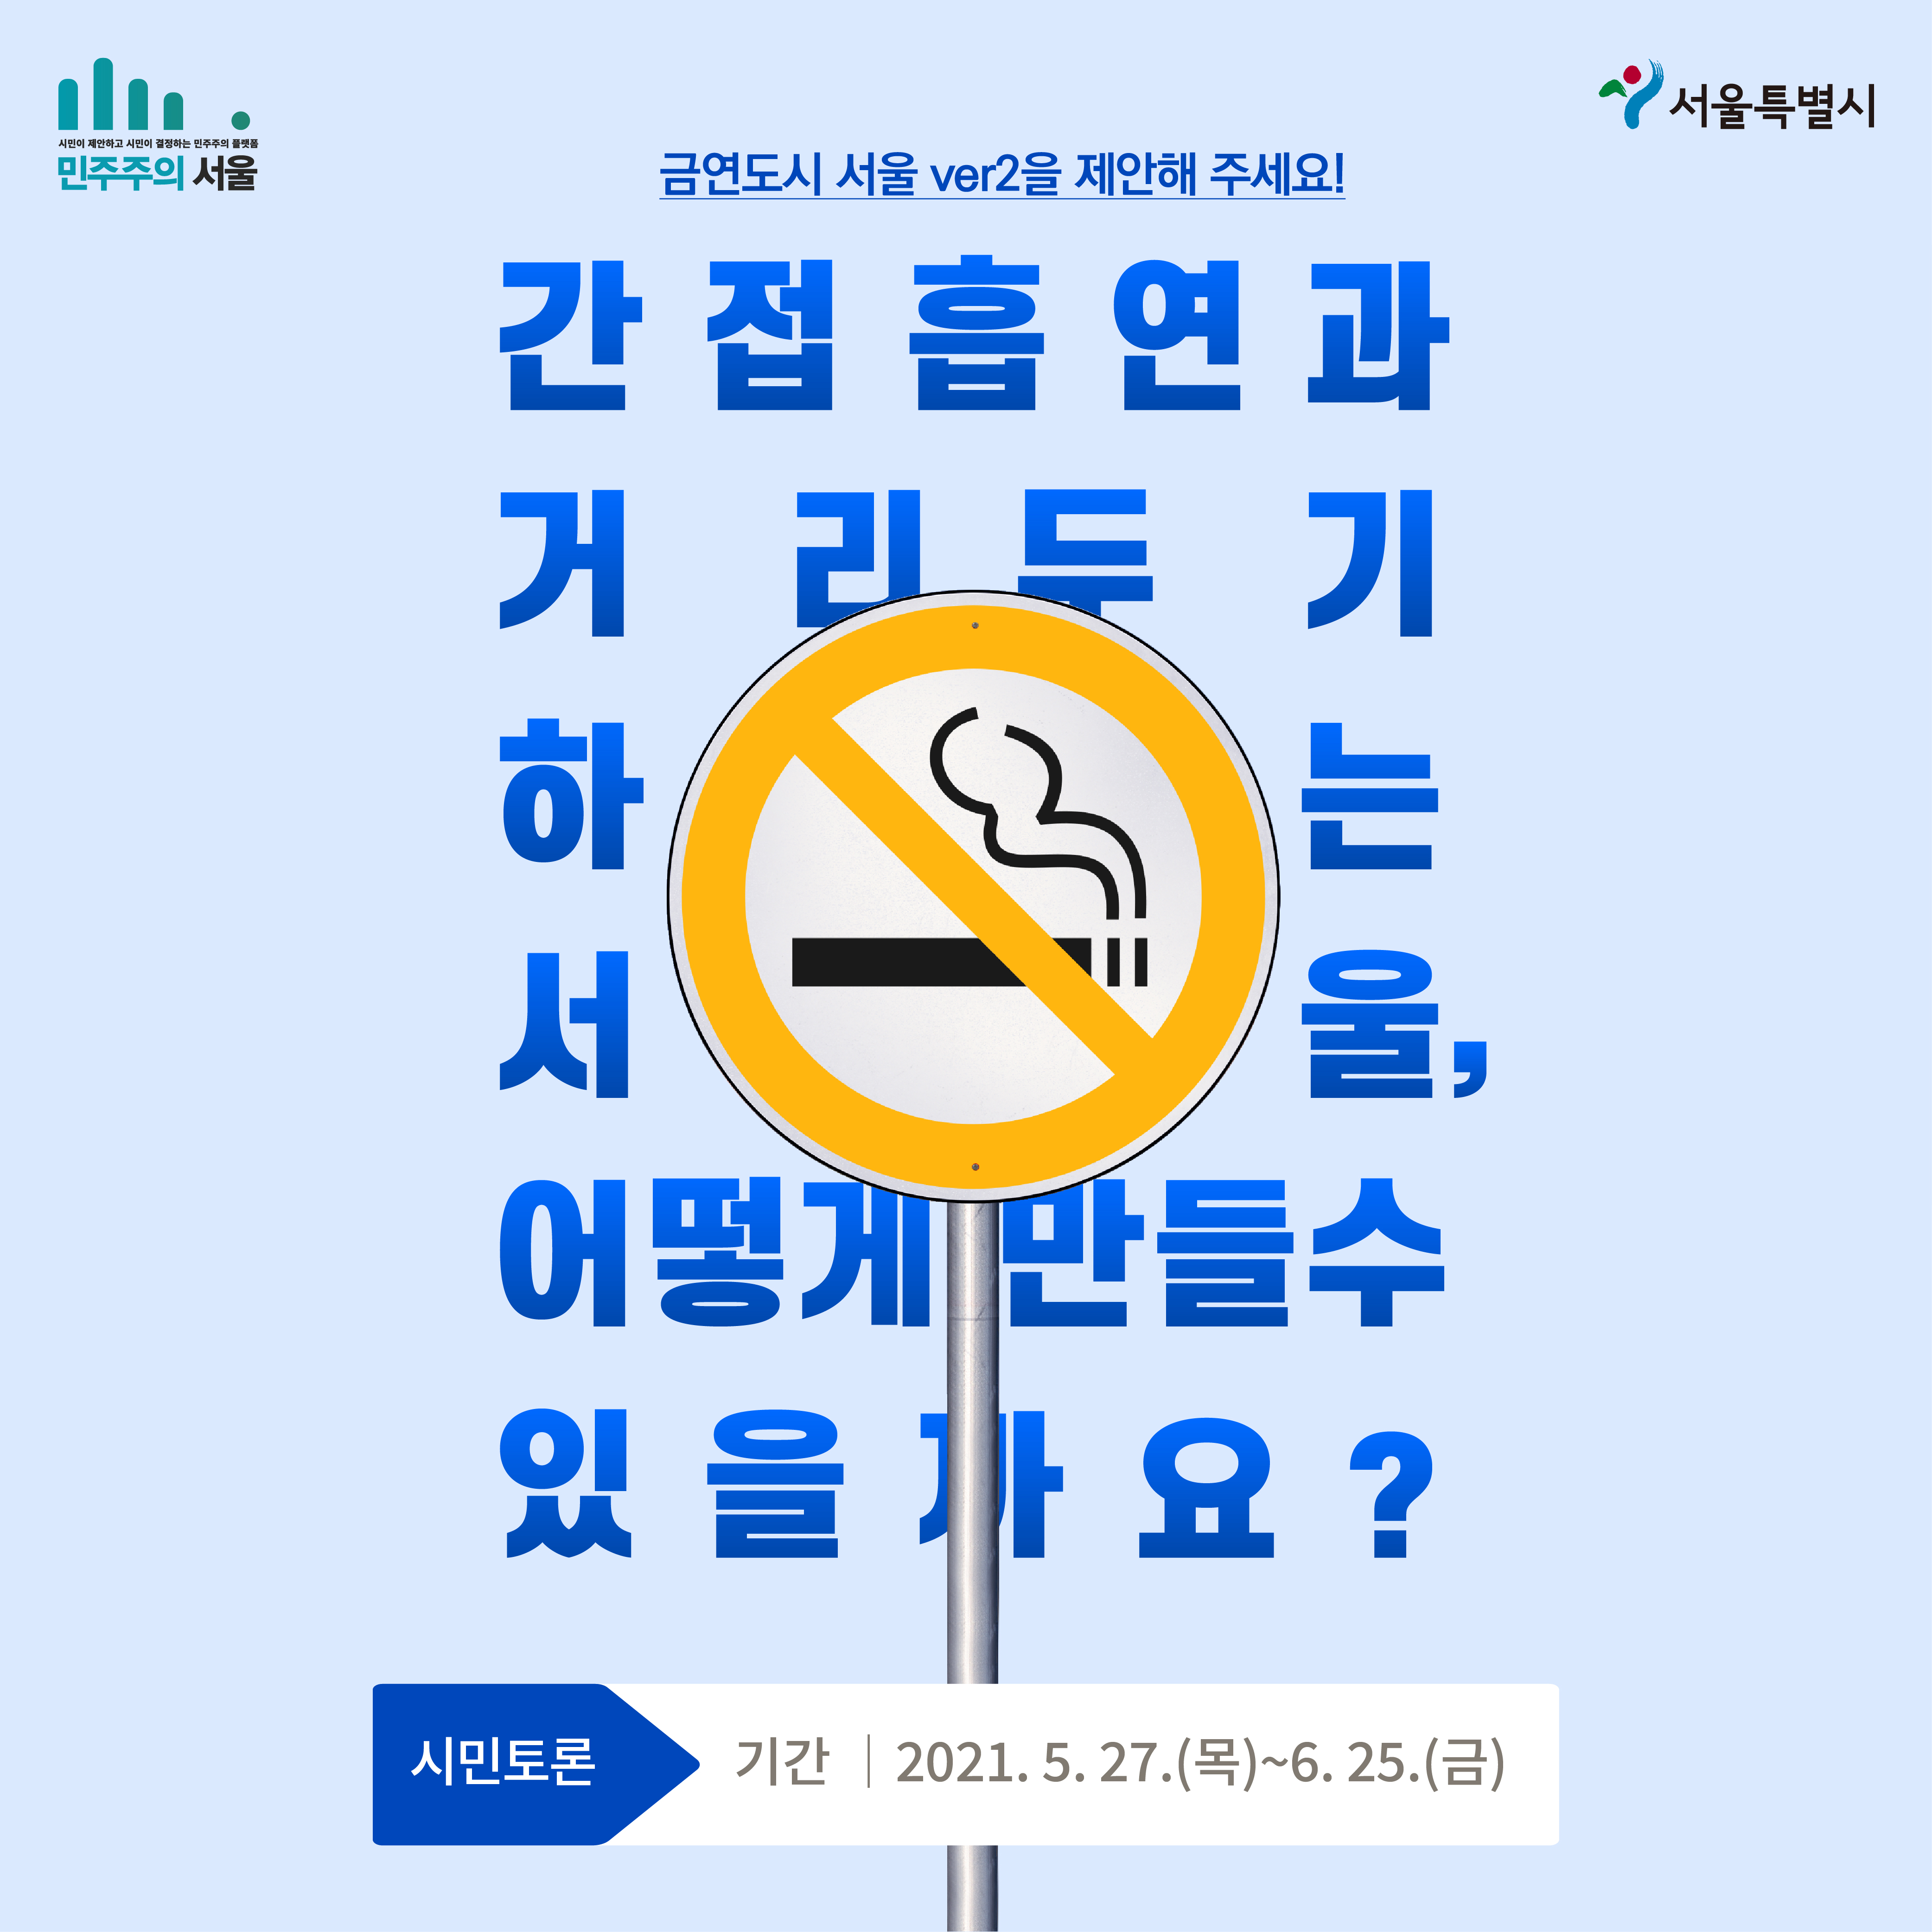 민주주의 서울 서울특별시 금연도시 서울 ver2을 제안해 주세요! 간접흡연과 거리두기 하는 서울, 어떻게 만들수 있을까요? 시민토론 기간 | 2021.5.27(목)~6.25(금)